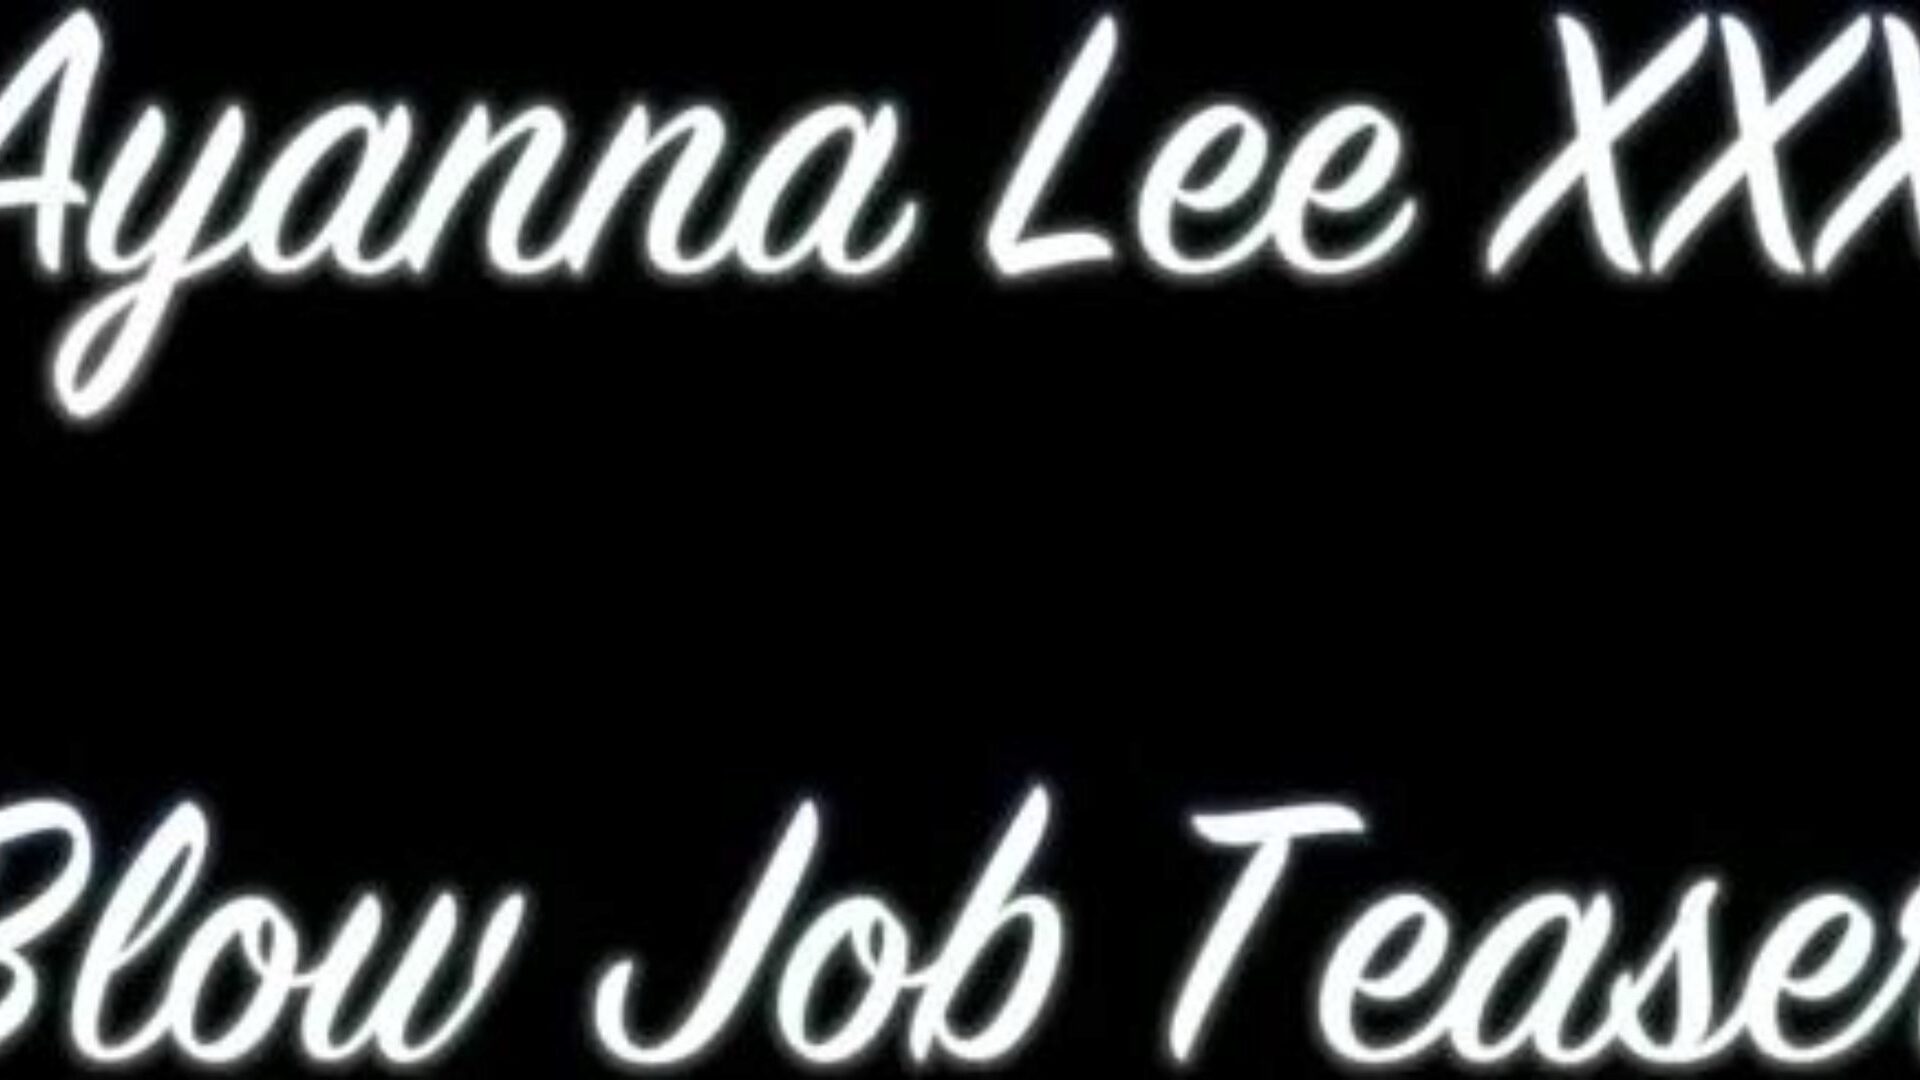 Ayanna Lee XXX - Blow Job Teaser (@WangWorldHD)